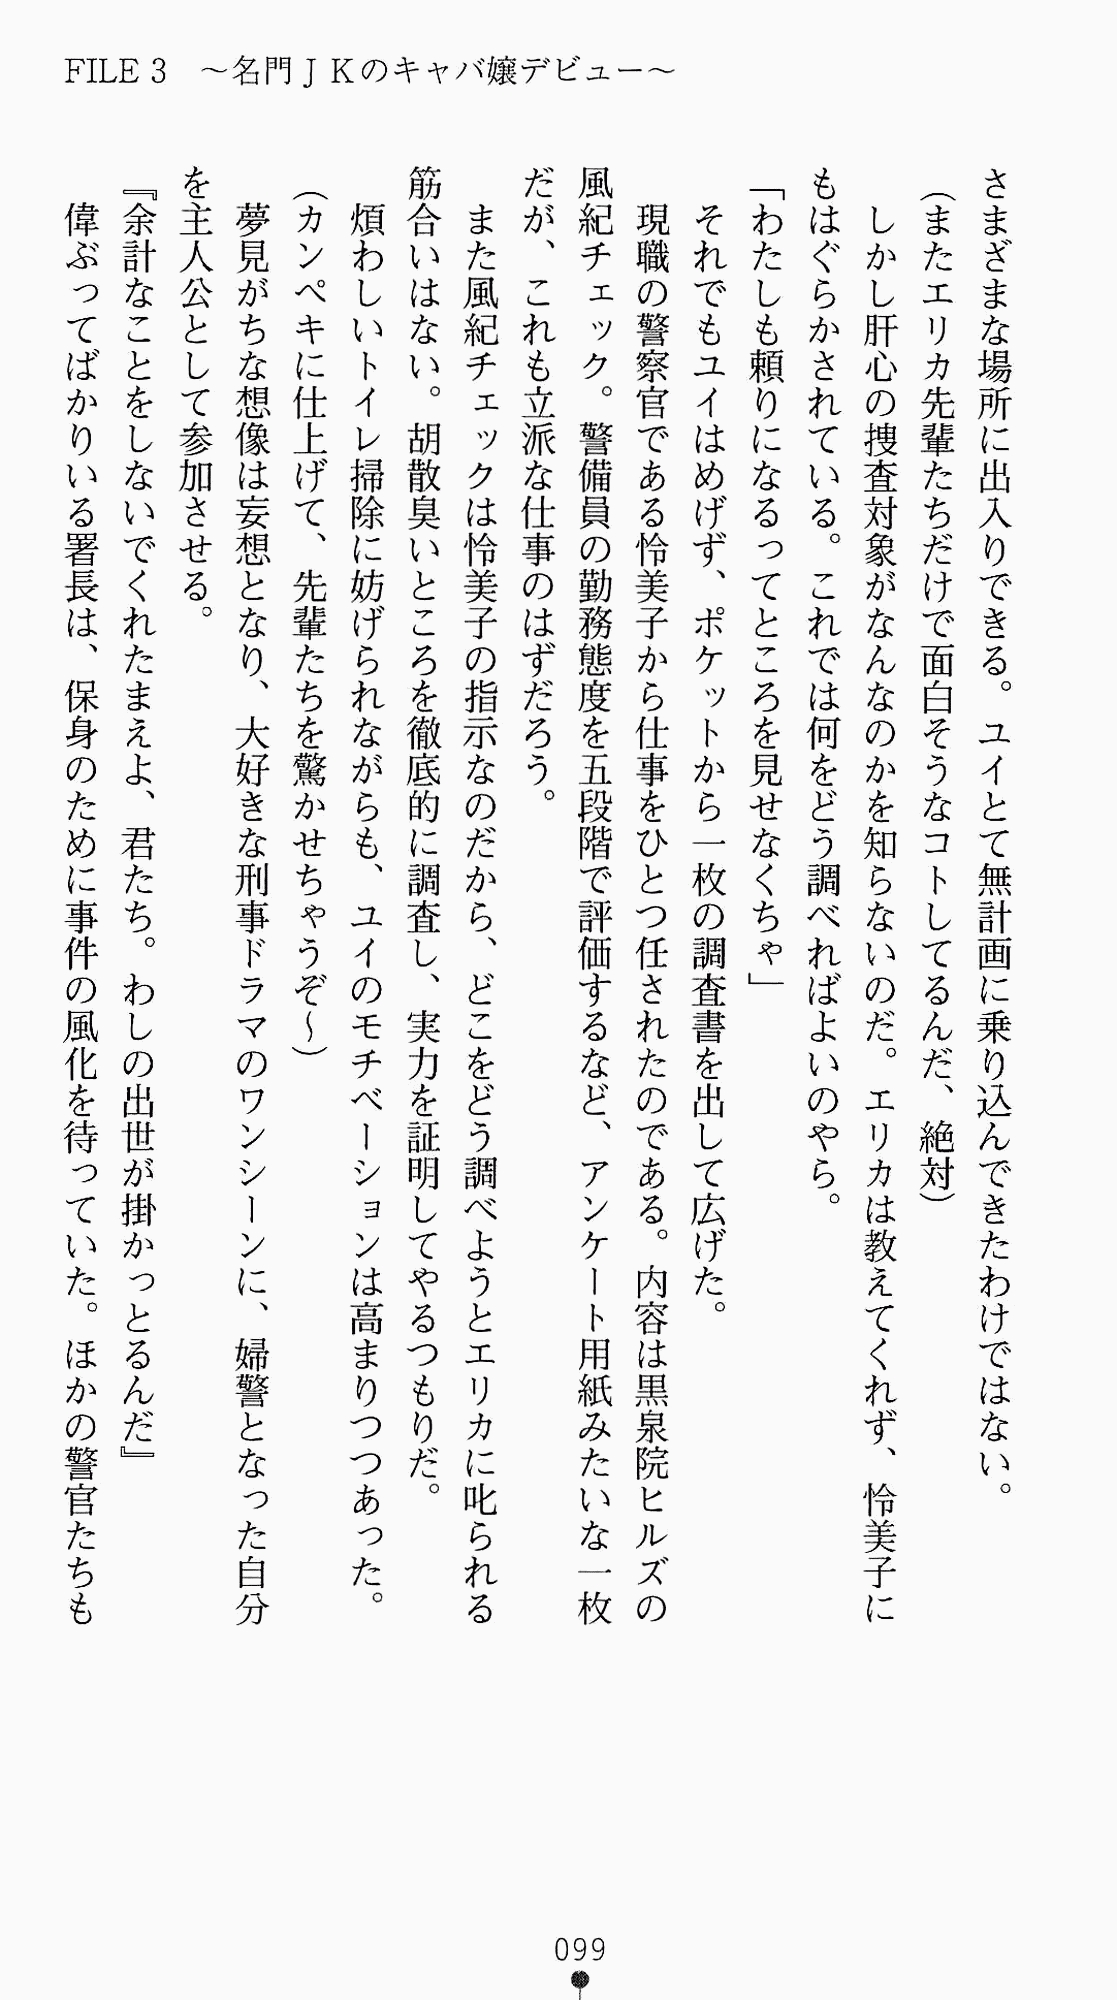 [Kagura Youko, Takahama Tarou] Shiritsu Tantei Takasuga Erika no Jikenbo 2 - Chijouha AV Satsuei 24-ji 114